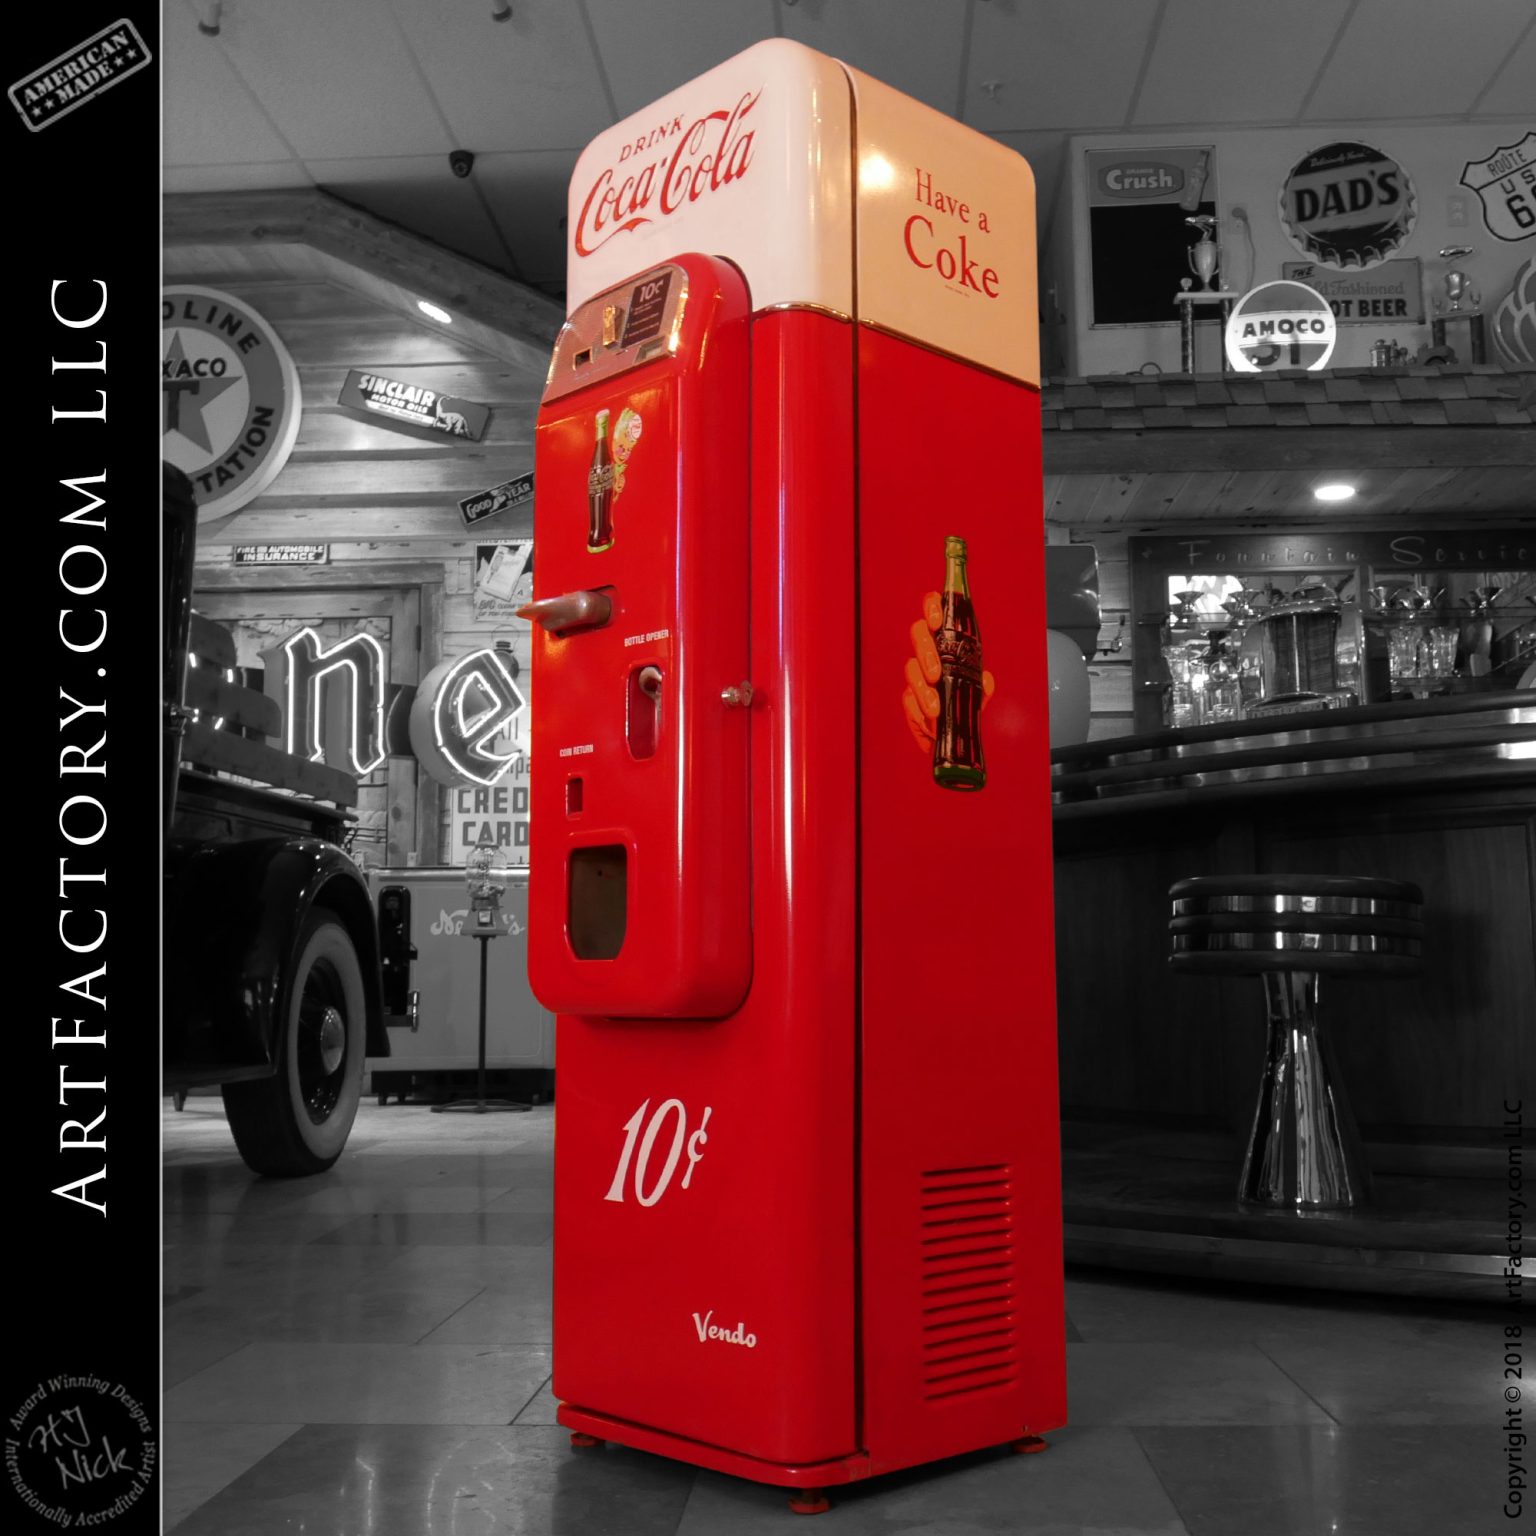 Vendo 44 Coke Machine: Extremely Rare Original 1950's Survivor Vendor